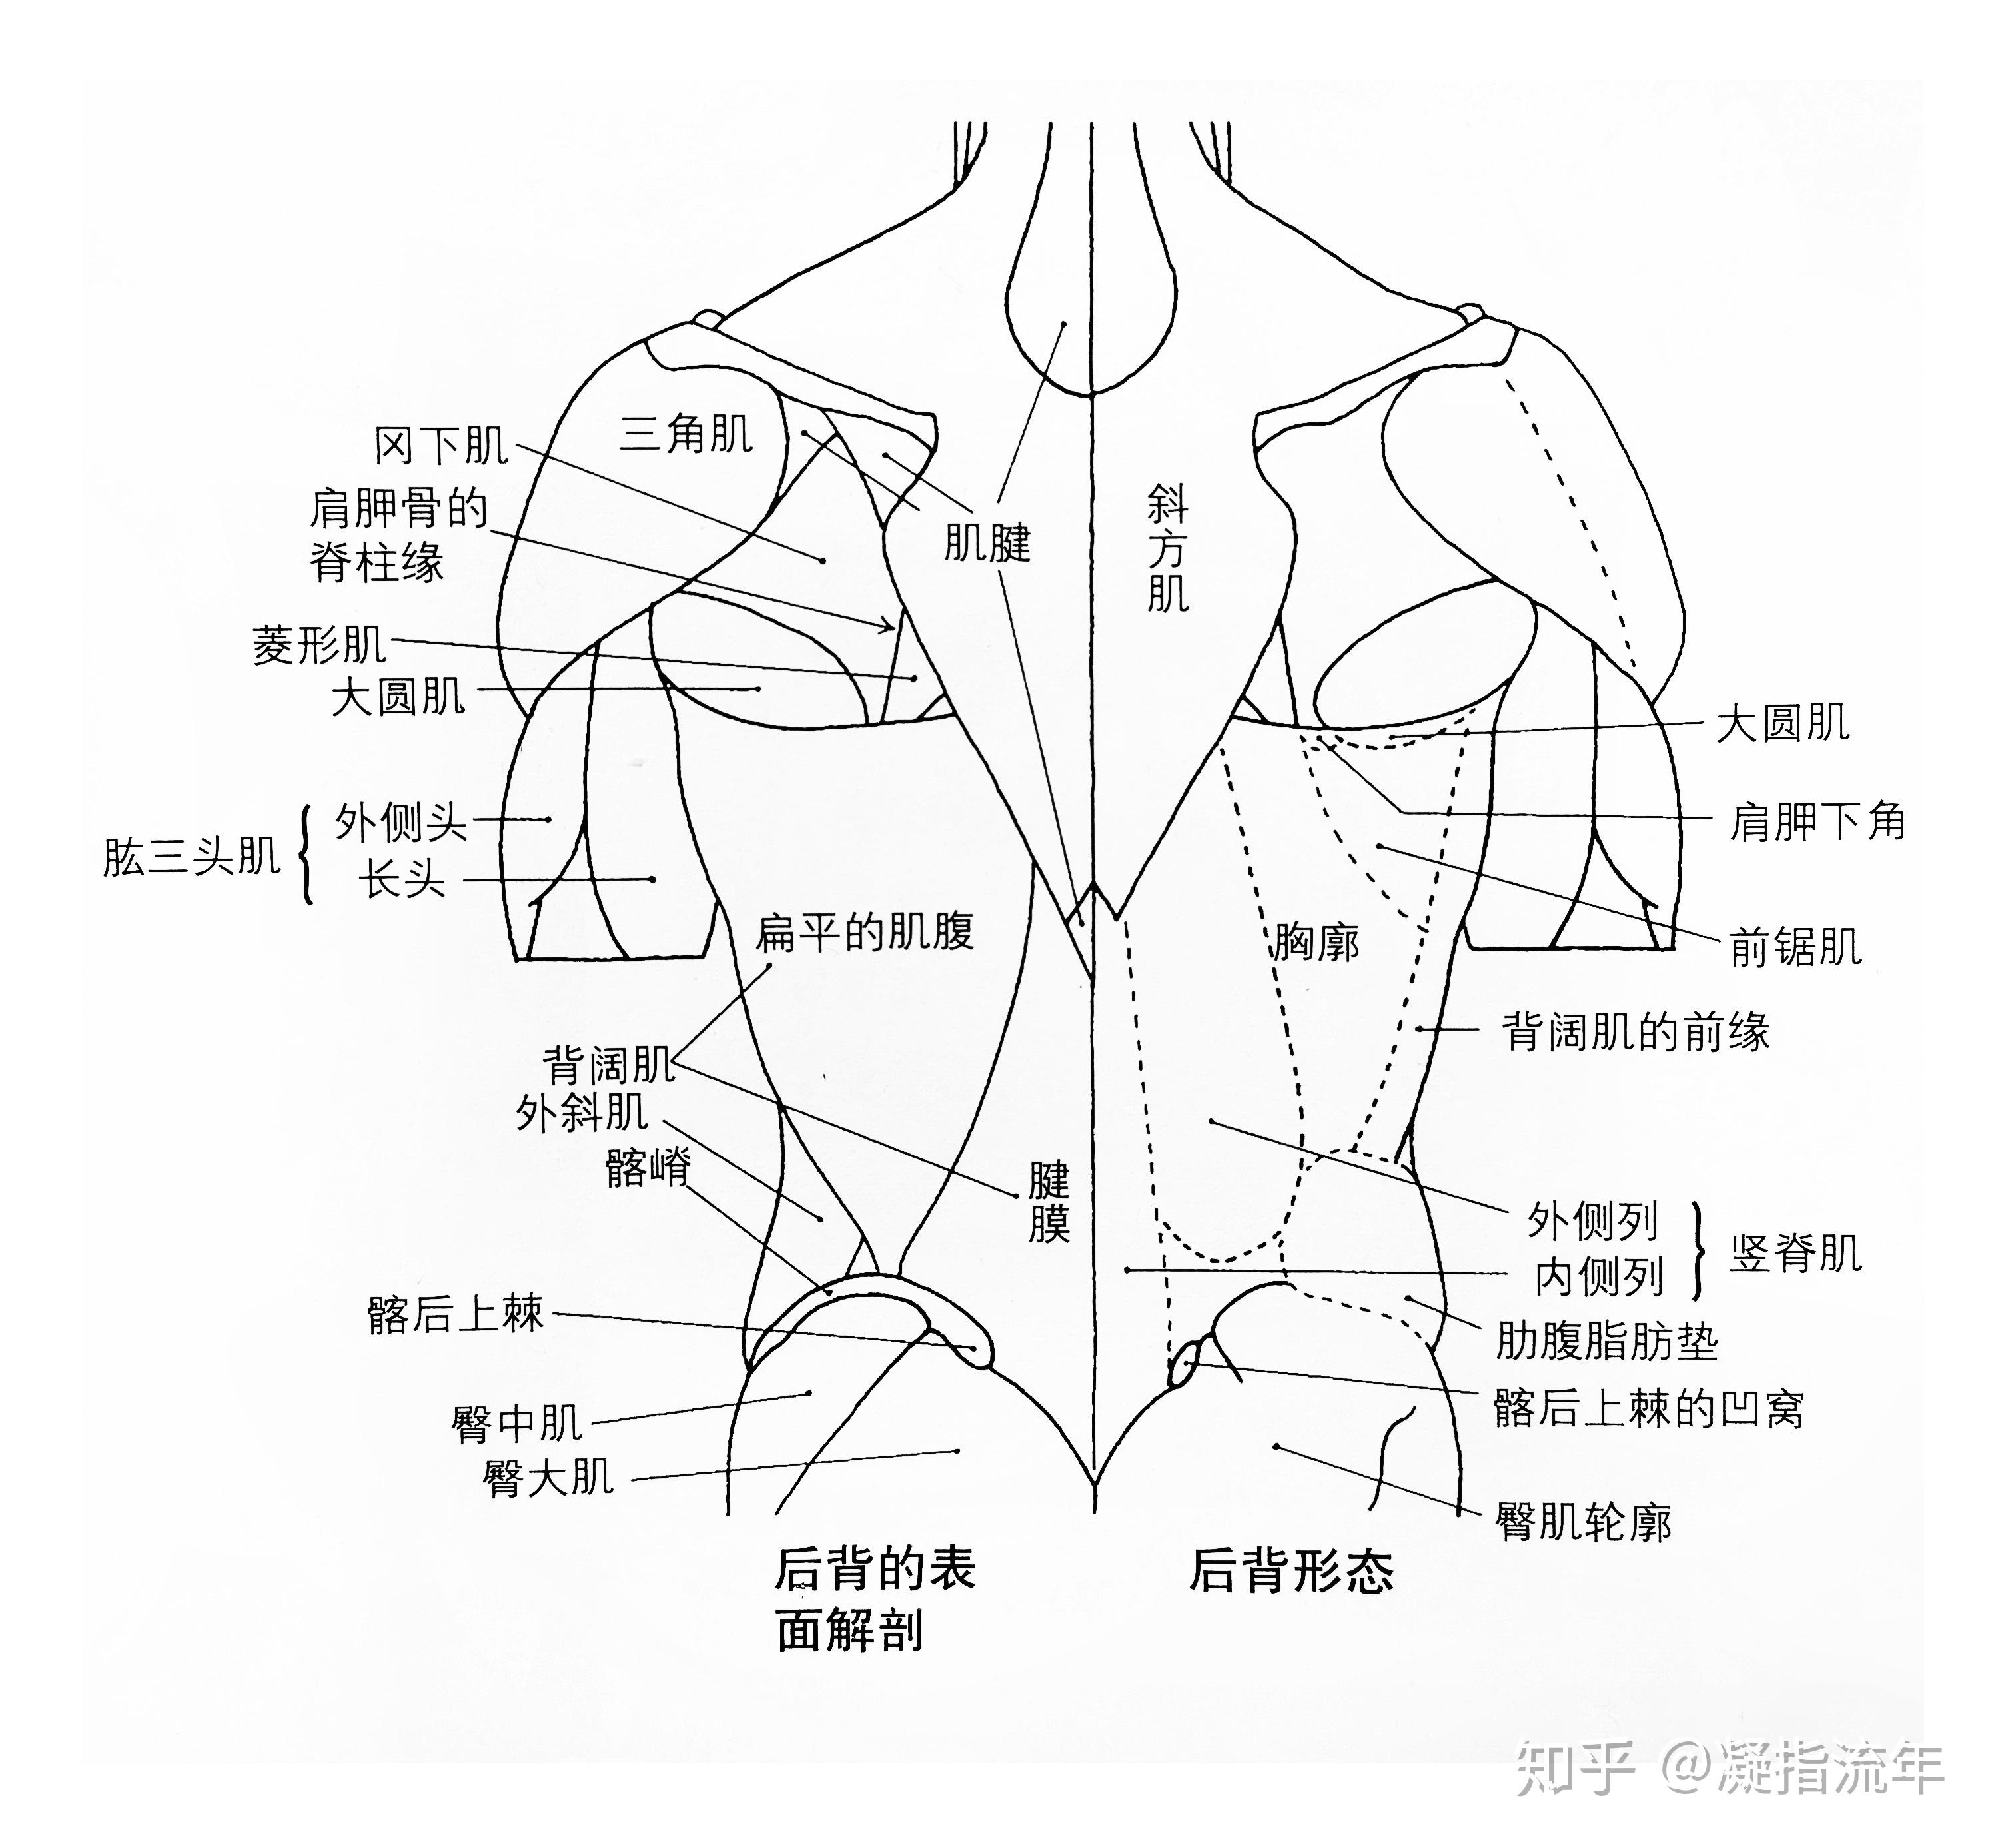 背部肌肉图解 结构图图片